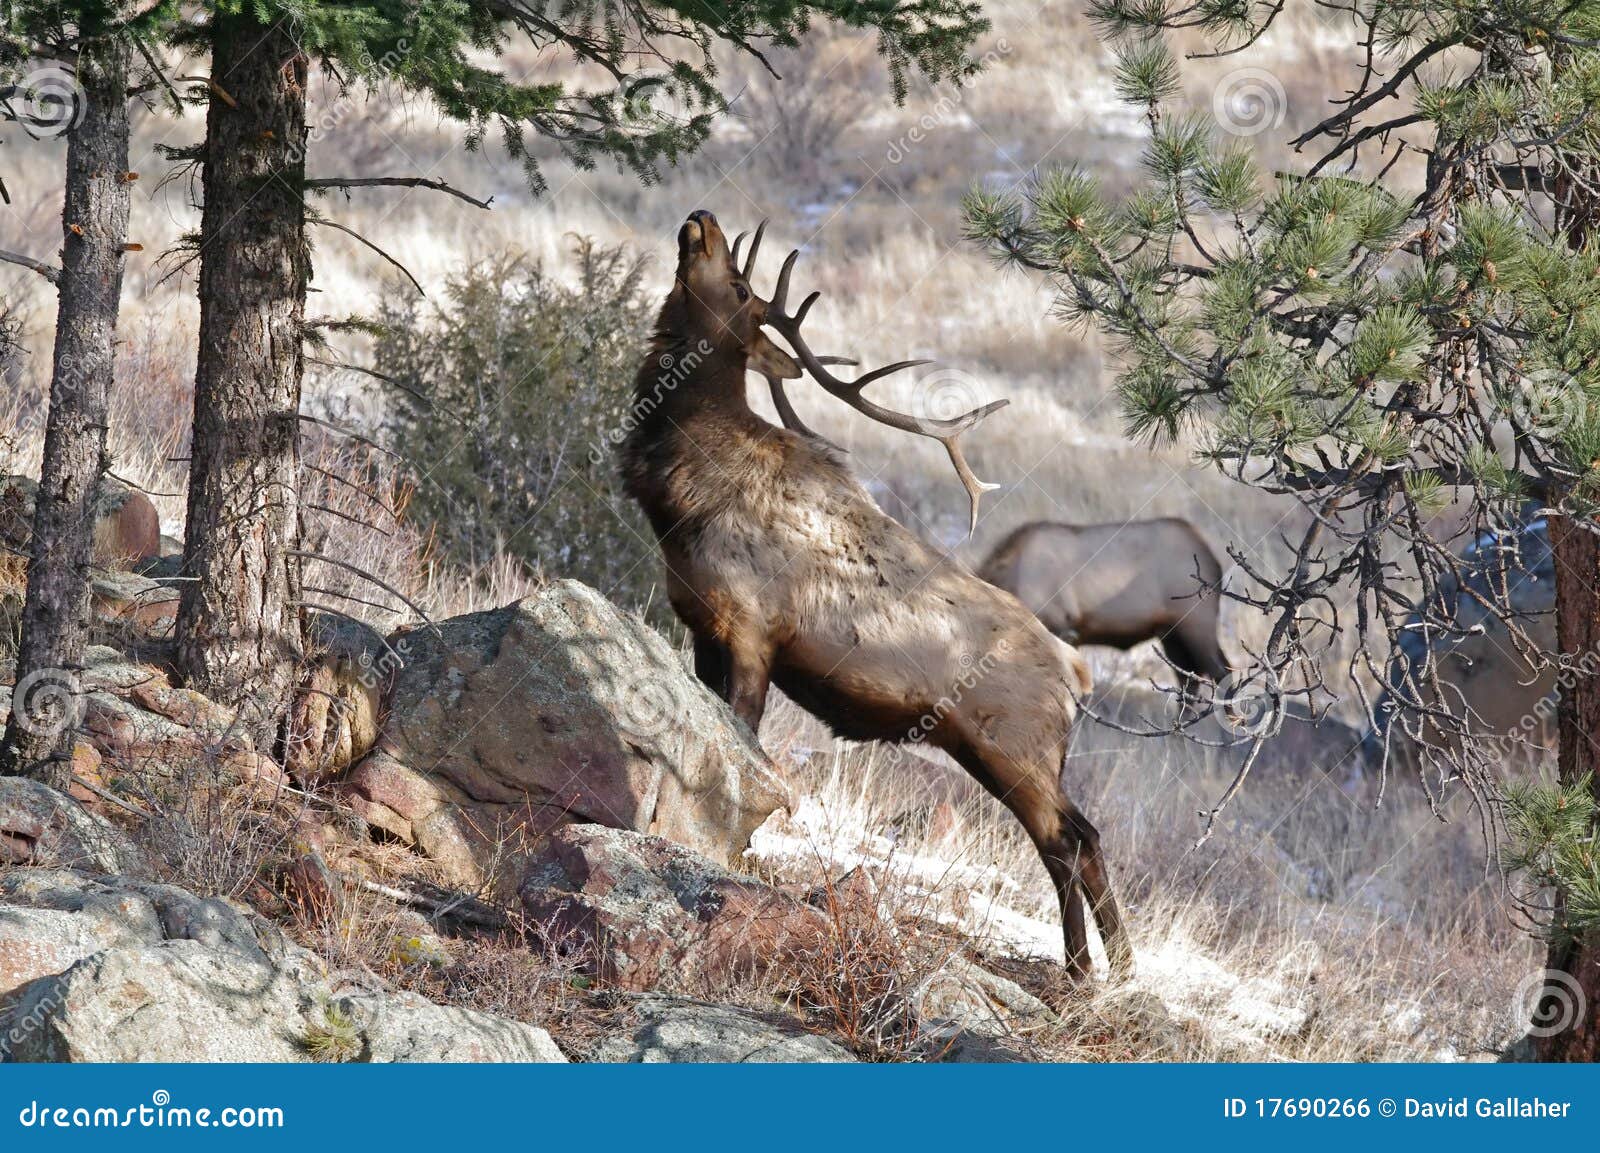 elk with antlers